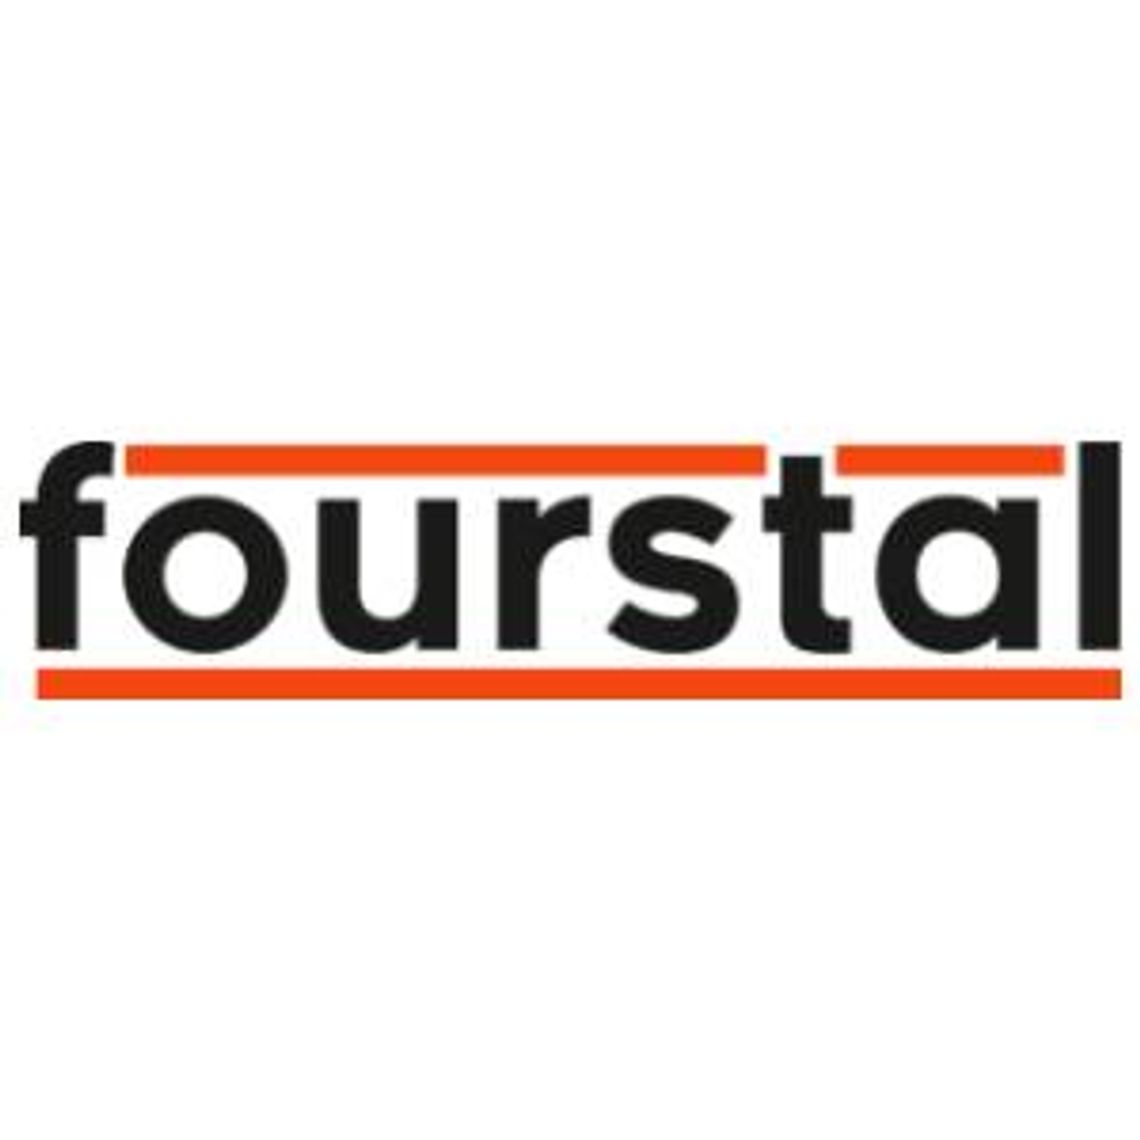 Przenośniki zgrzebłowe - FourStal